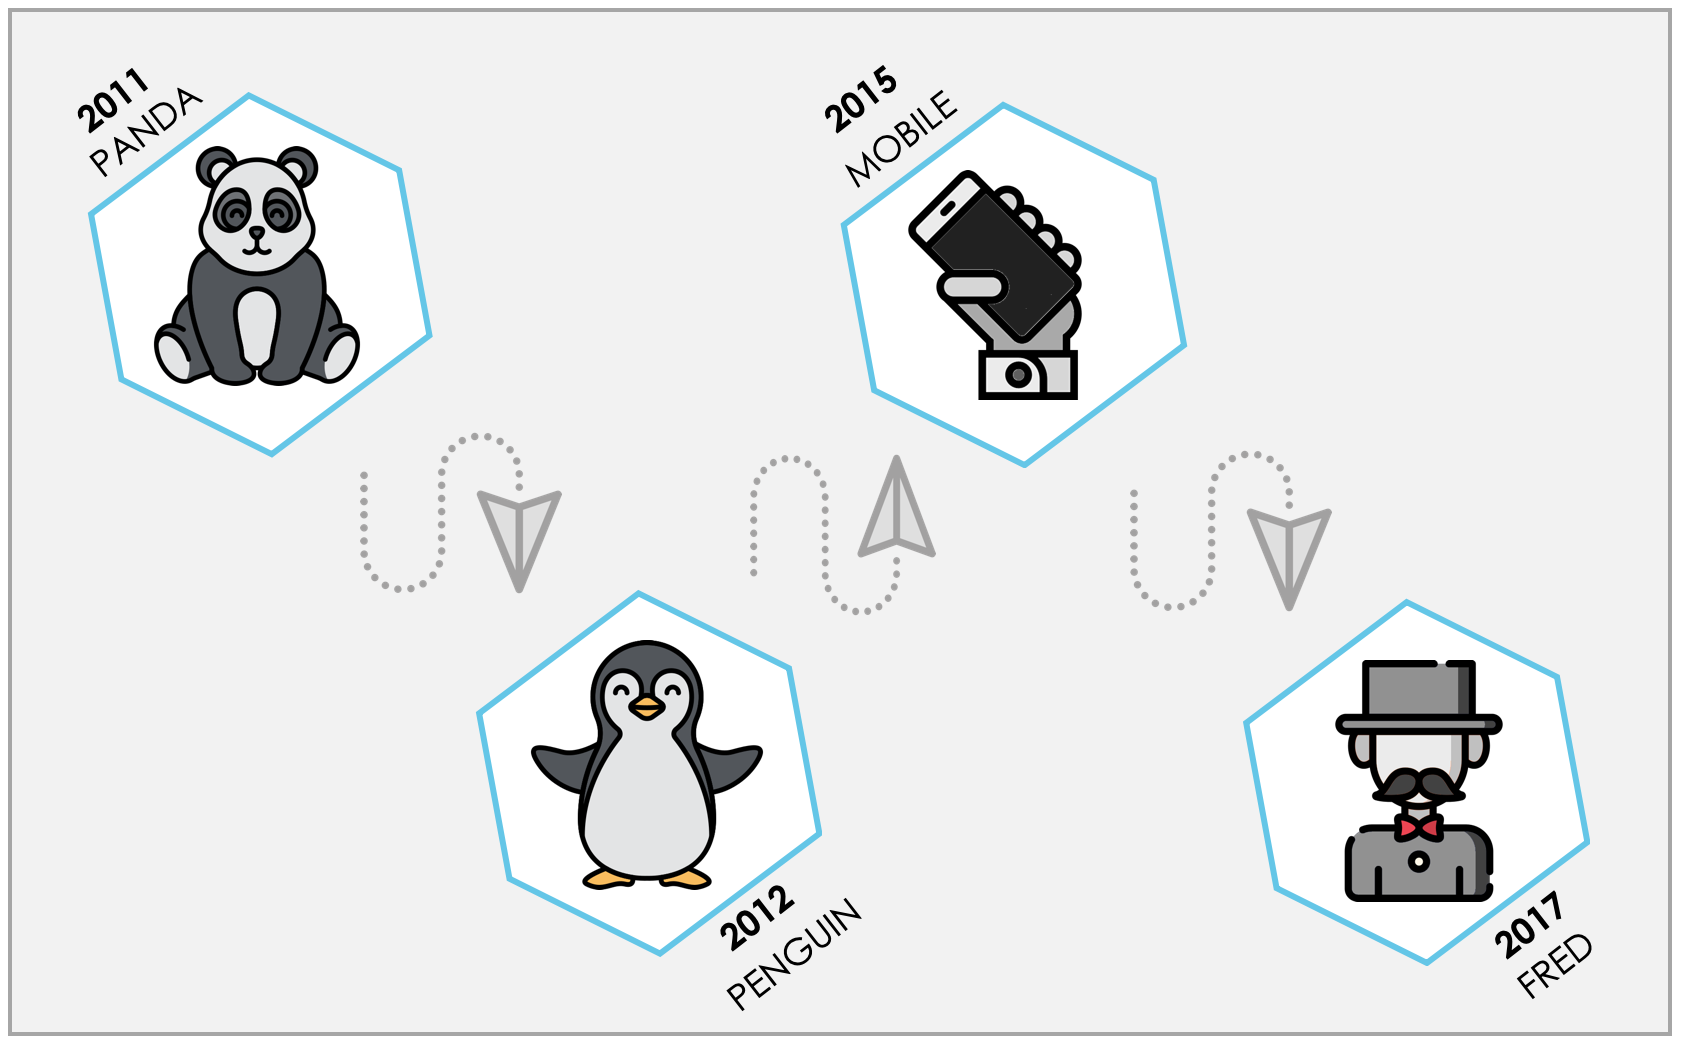 Die wichtigsten Google-Updates im Linkbuilding im Überblick:
2011 startete alles mit dem Panda-Update, auf welches 2012 das Penguin-Update folgte. Im Jahr 2015 setzte Google mit dem Mobile-First Index nach und 2017 bereicherte das Fred-Update das Linkbuilding.